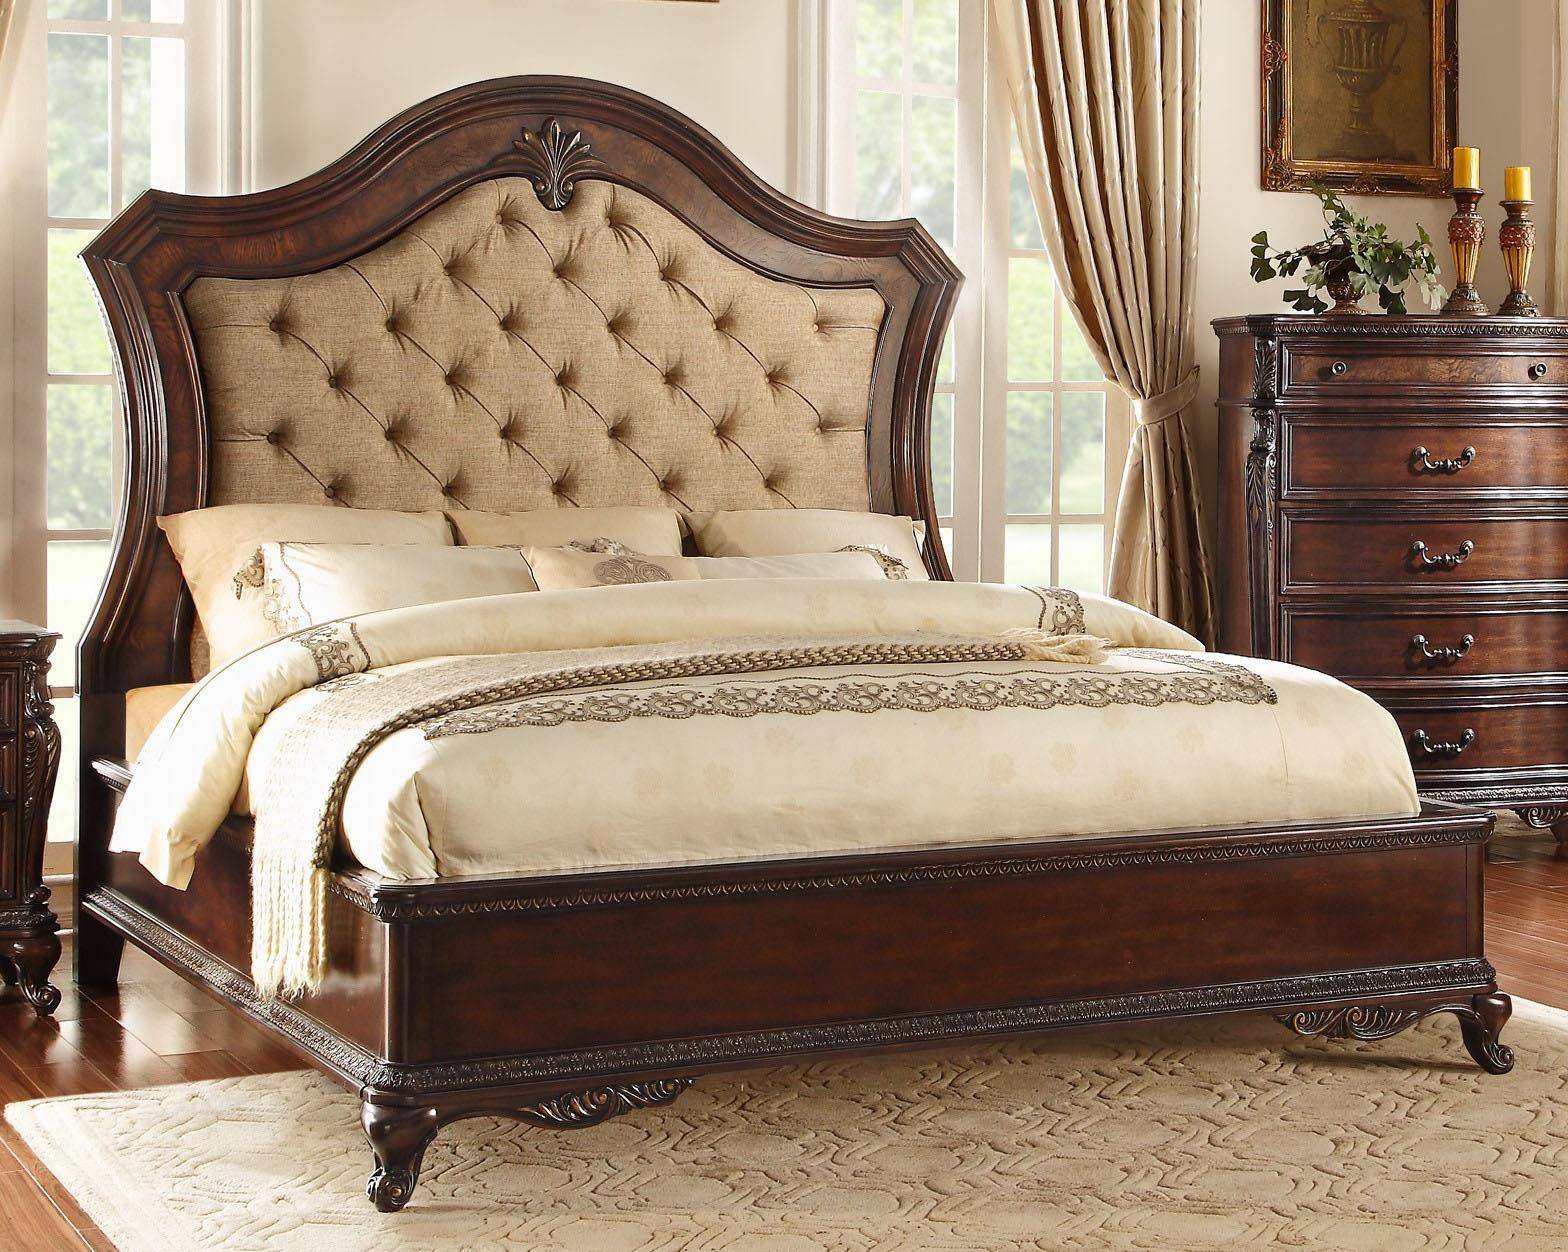 Queen Bedroom Furniture Set Awesome Homelegance 1935pn 1 Bonaventure Park Cherry Queen Bedroom